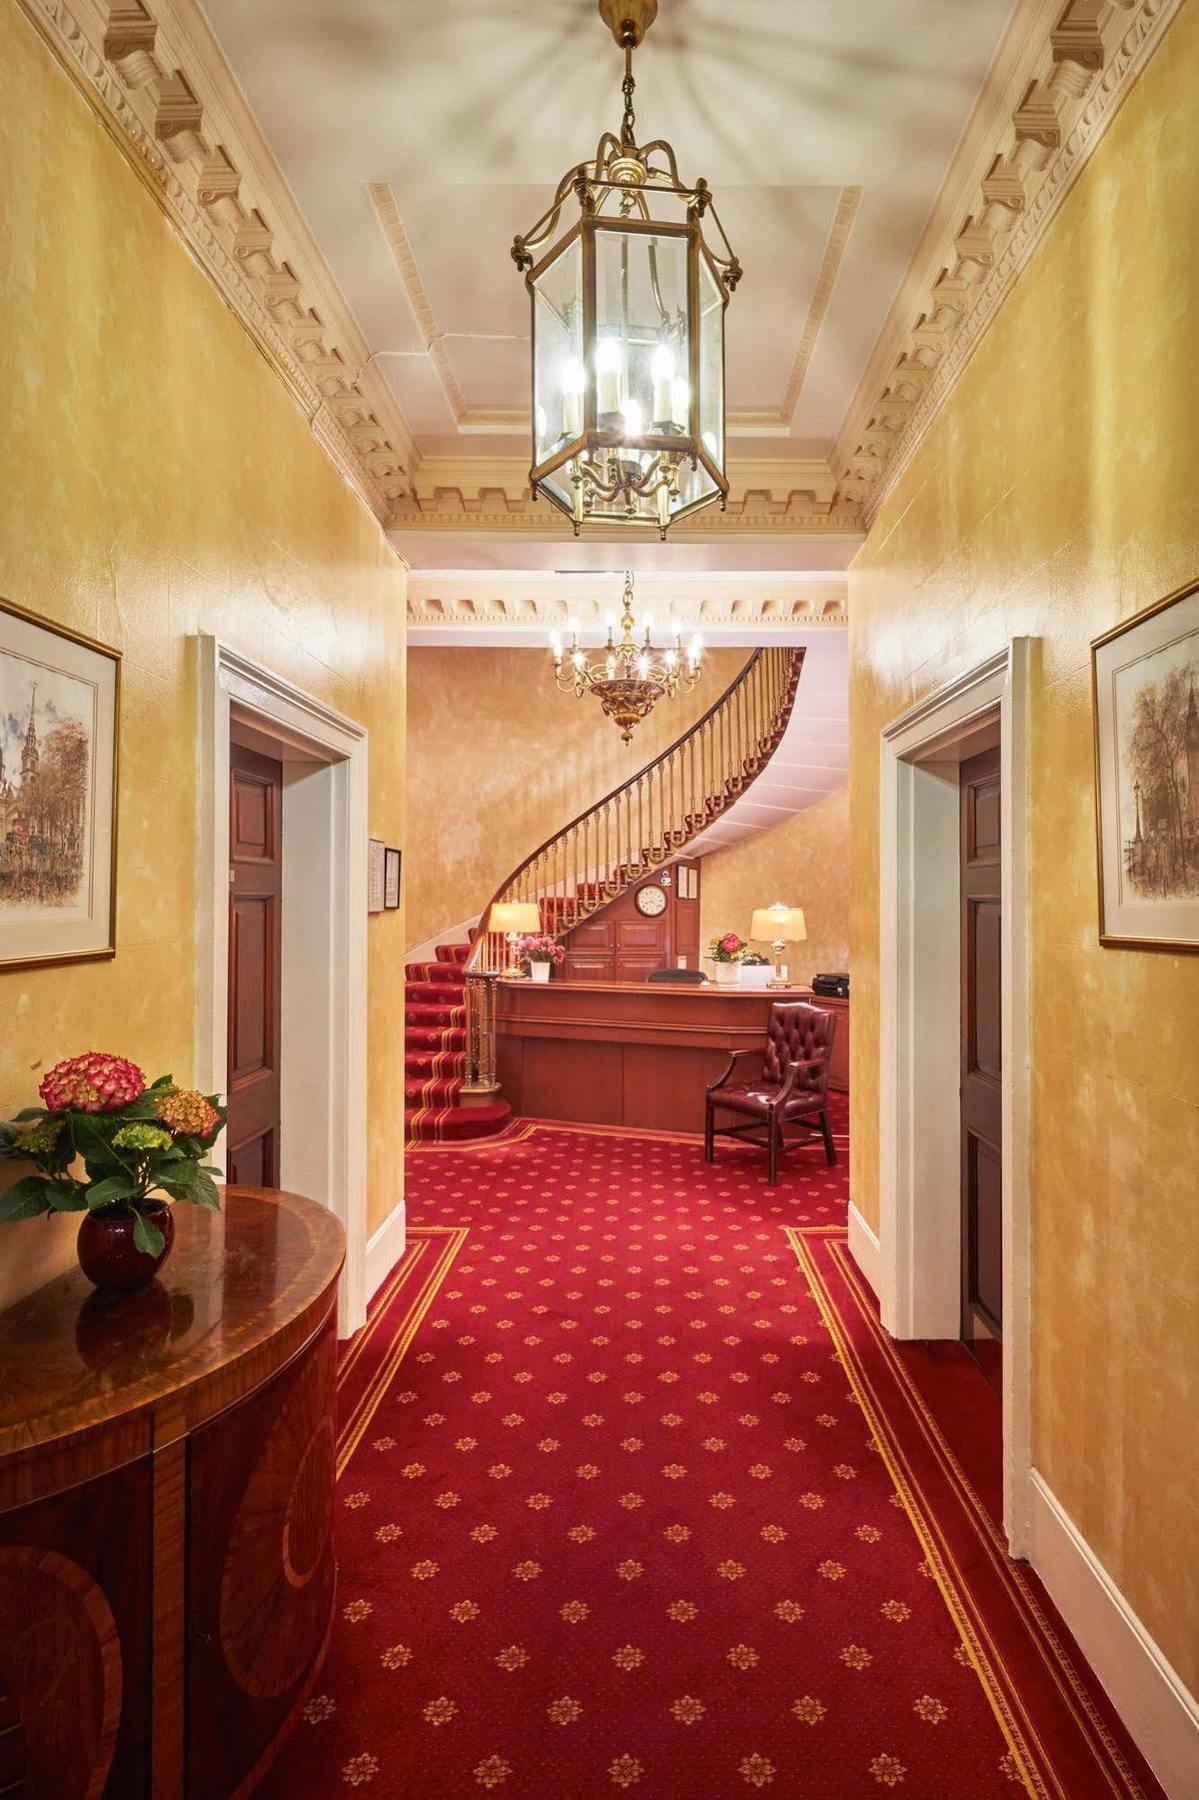 The Diplomat Hotel Londen Buitenkant foto